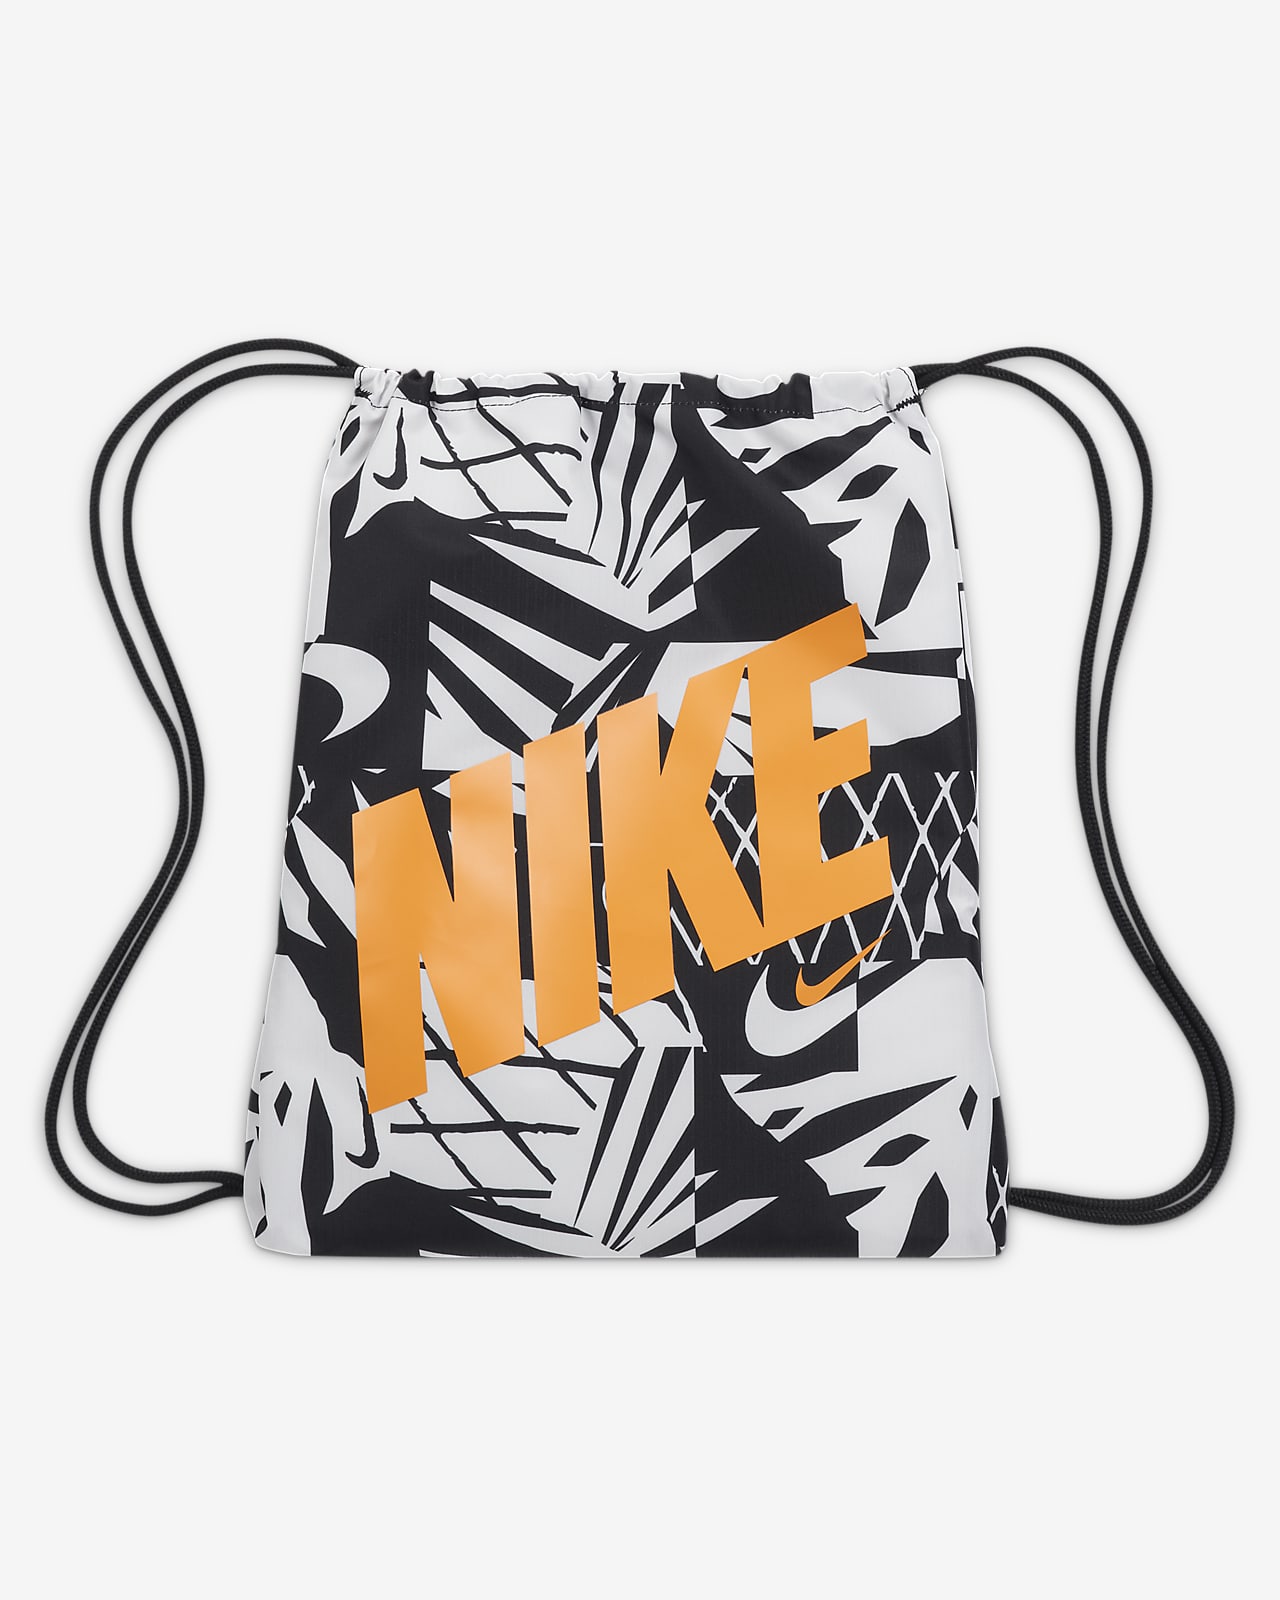 Nike-taske med snoretræk til (12L). Nike